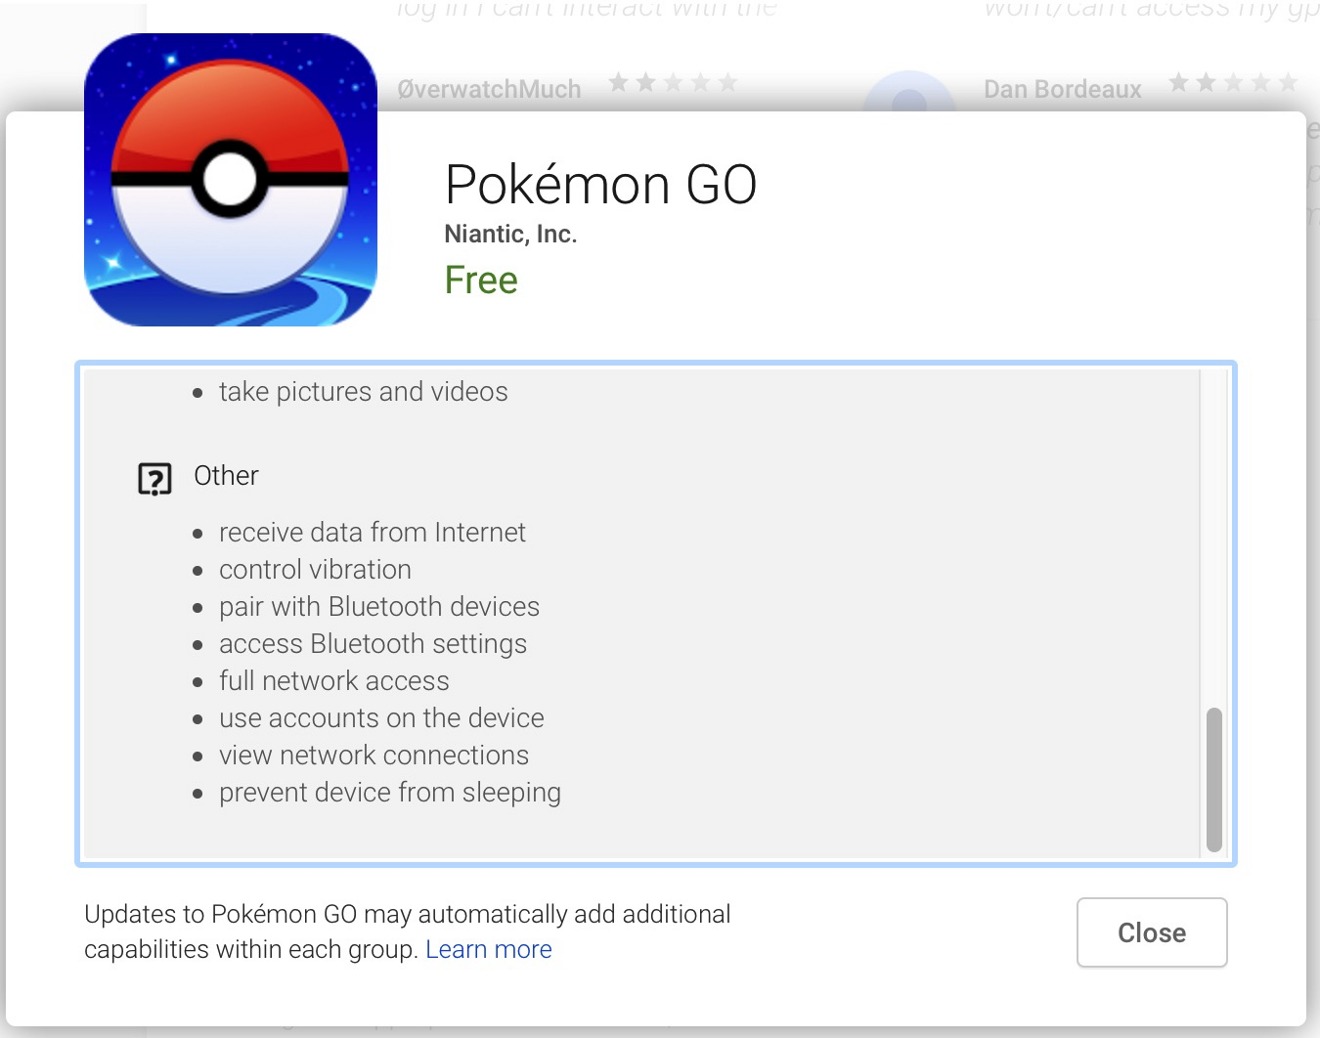 How do I log into Pokémon GO with Google?